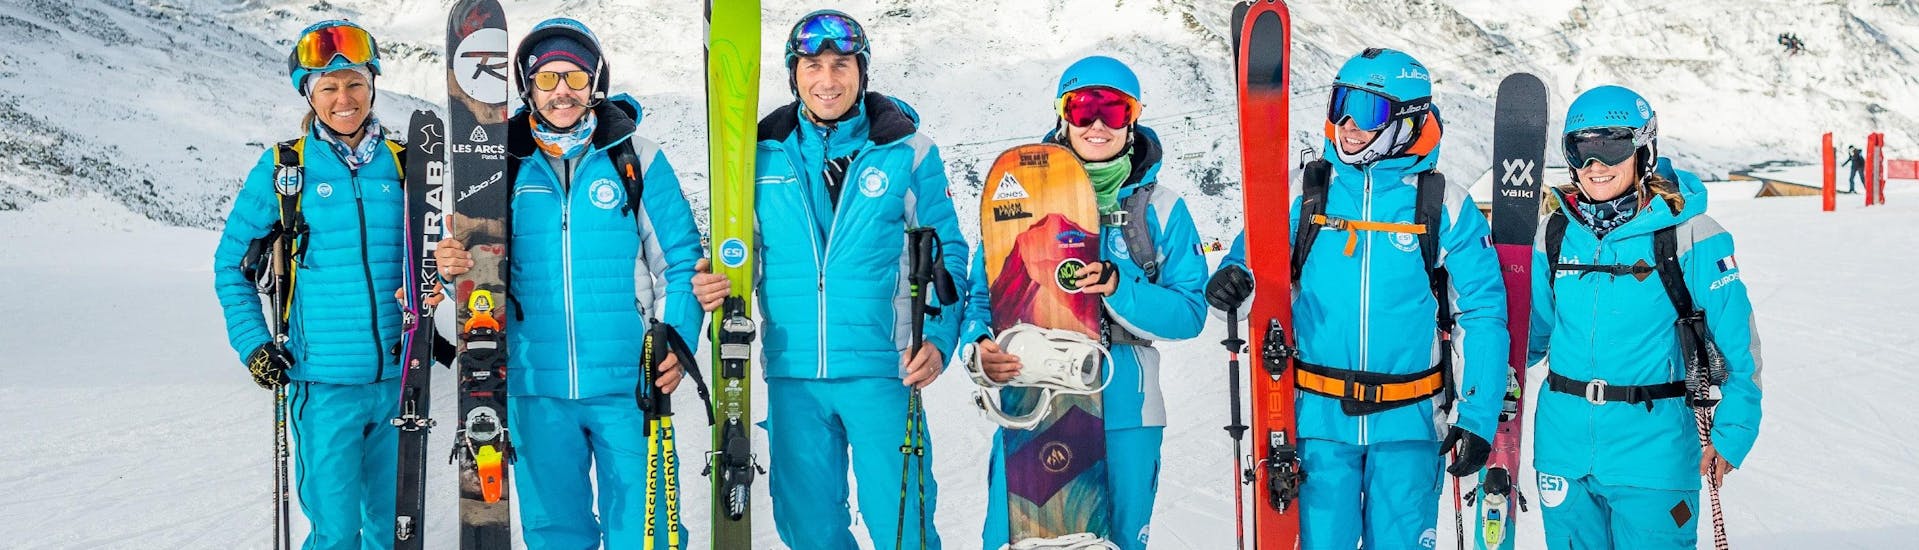 Instructeurs van ESI Alpe d'Huez - Europese skischool maken zich klaar om de deelnemers van de privé-snowboardlessen voor alle niveaus.